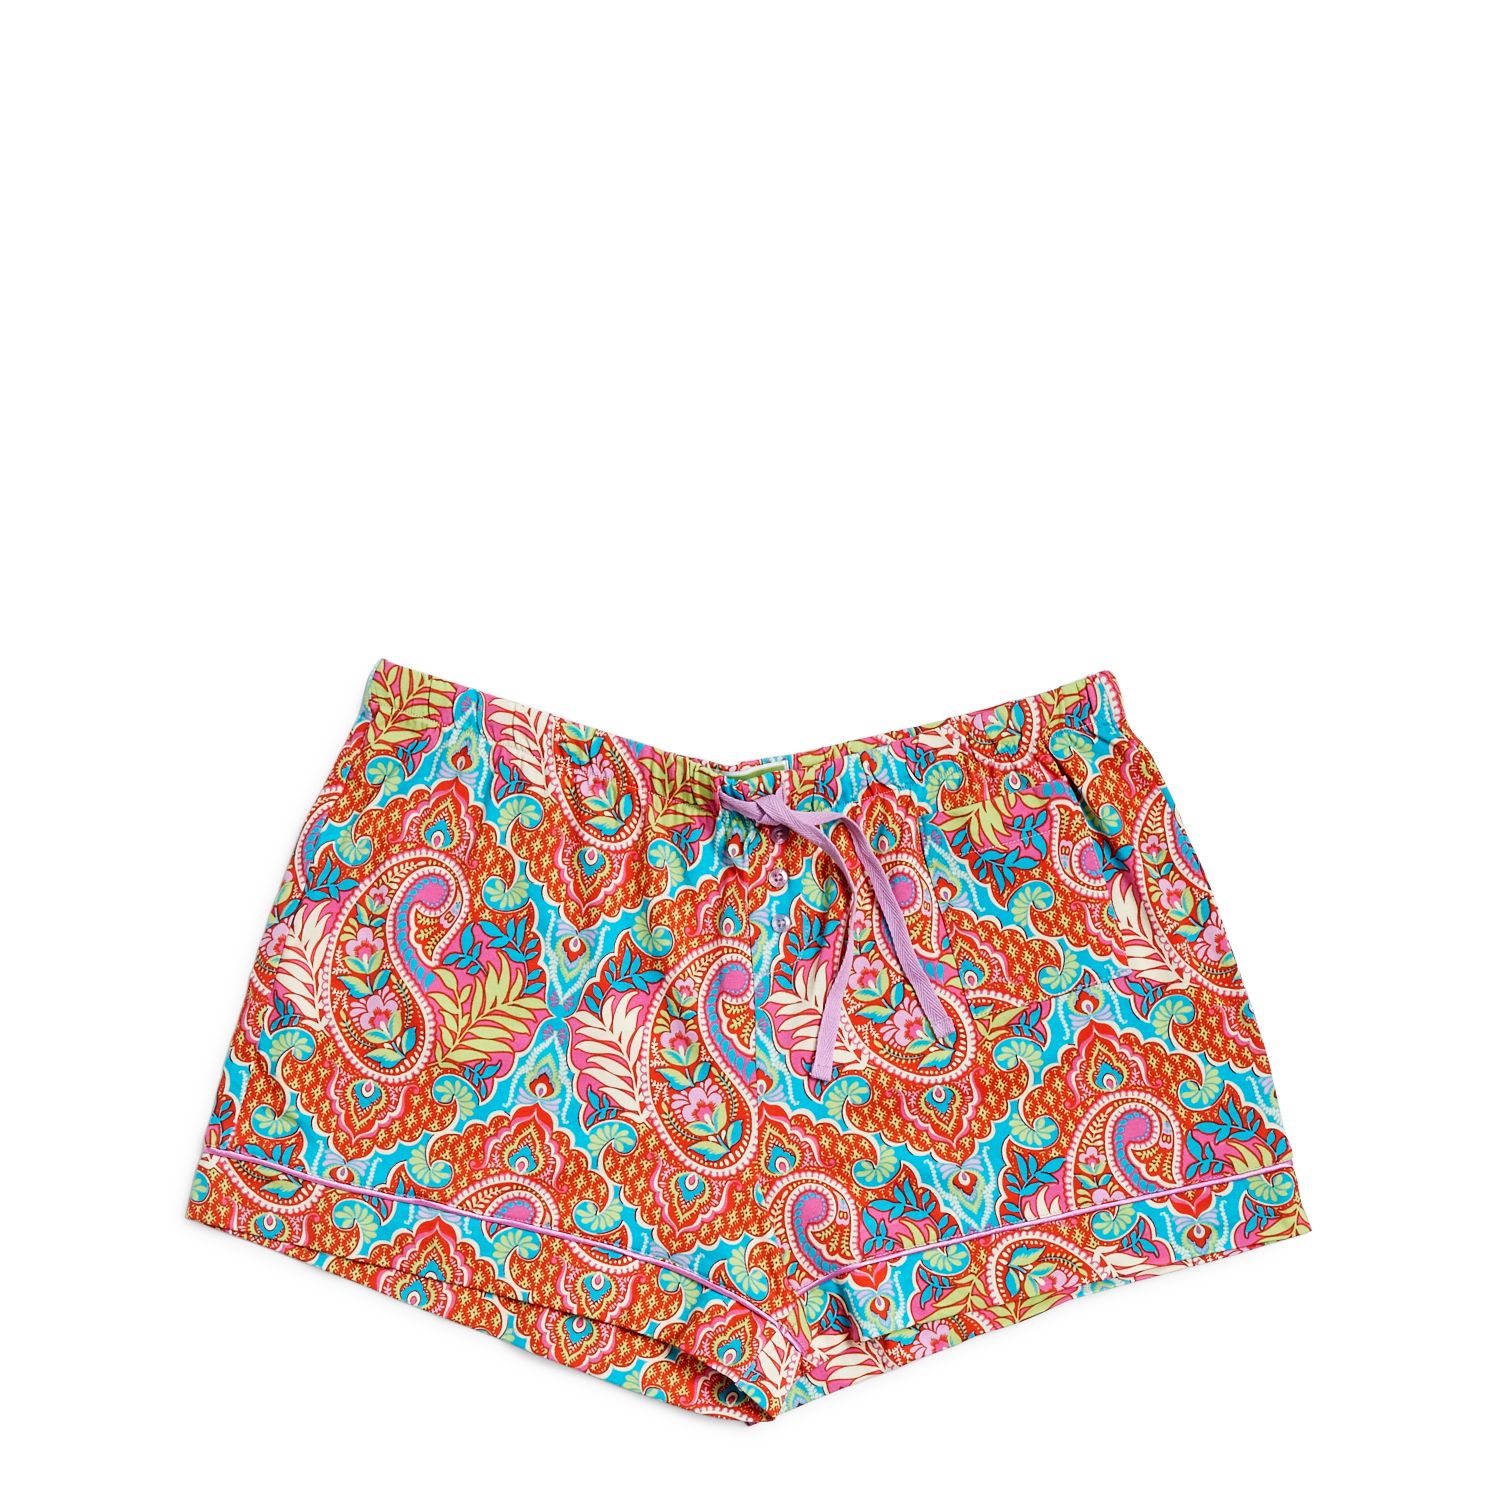 Vera Bradley Pajama Shorts | eBay